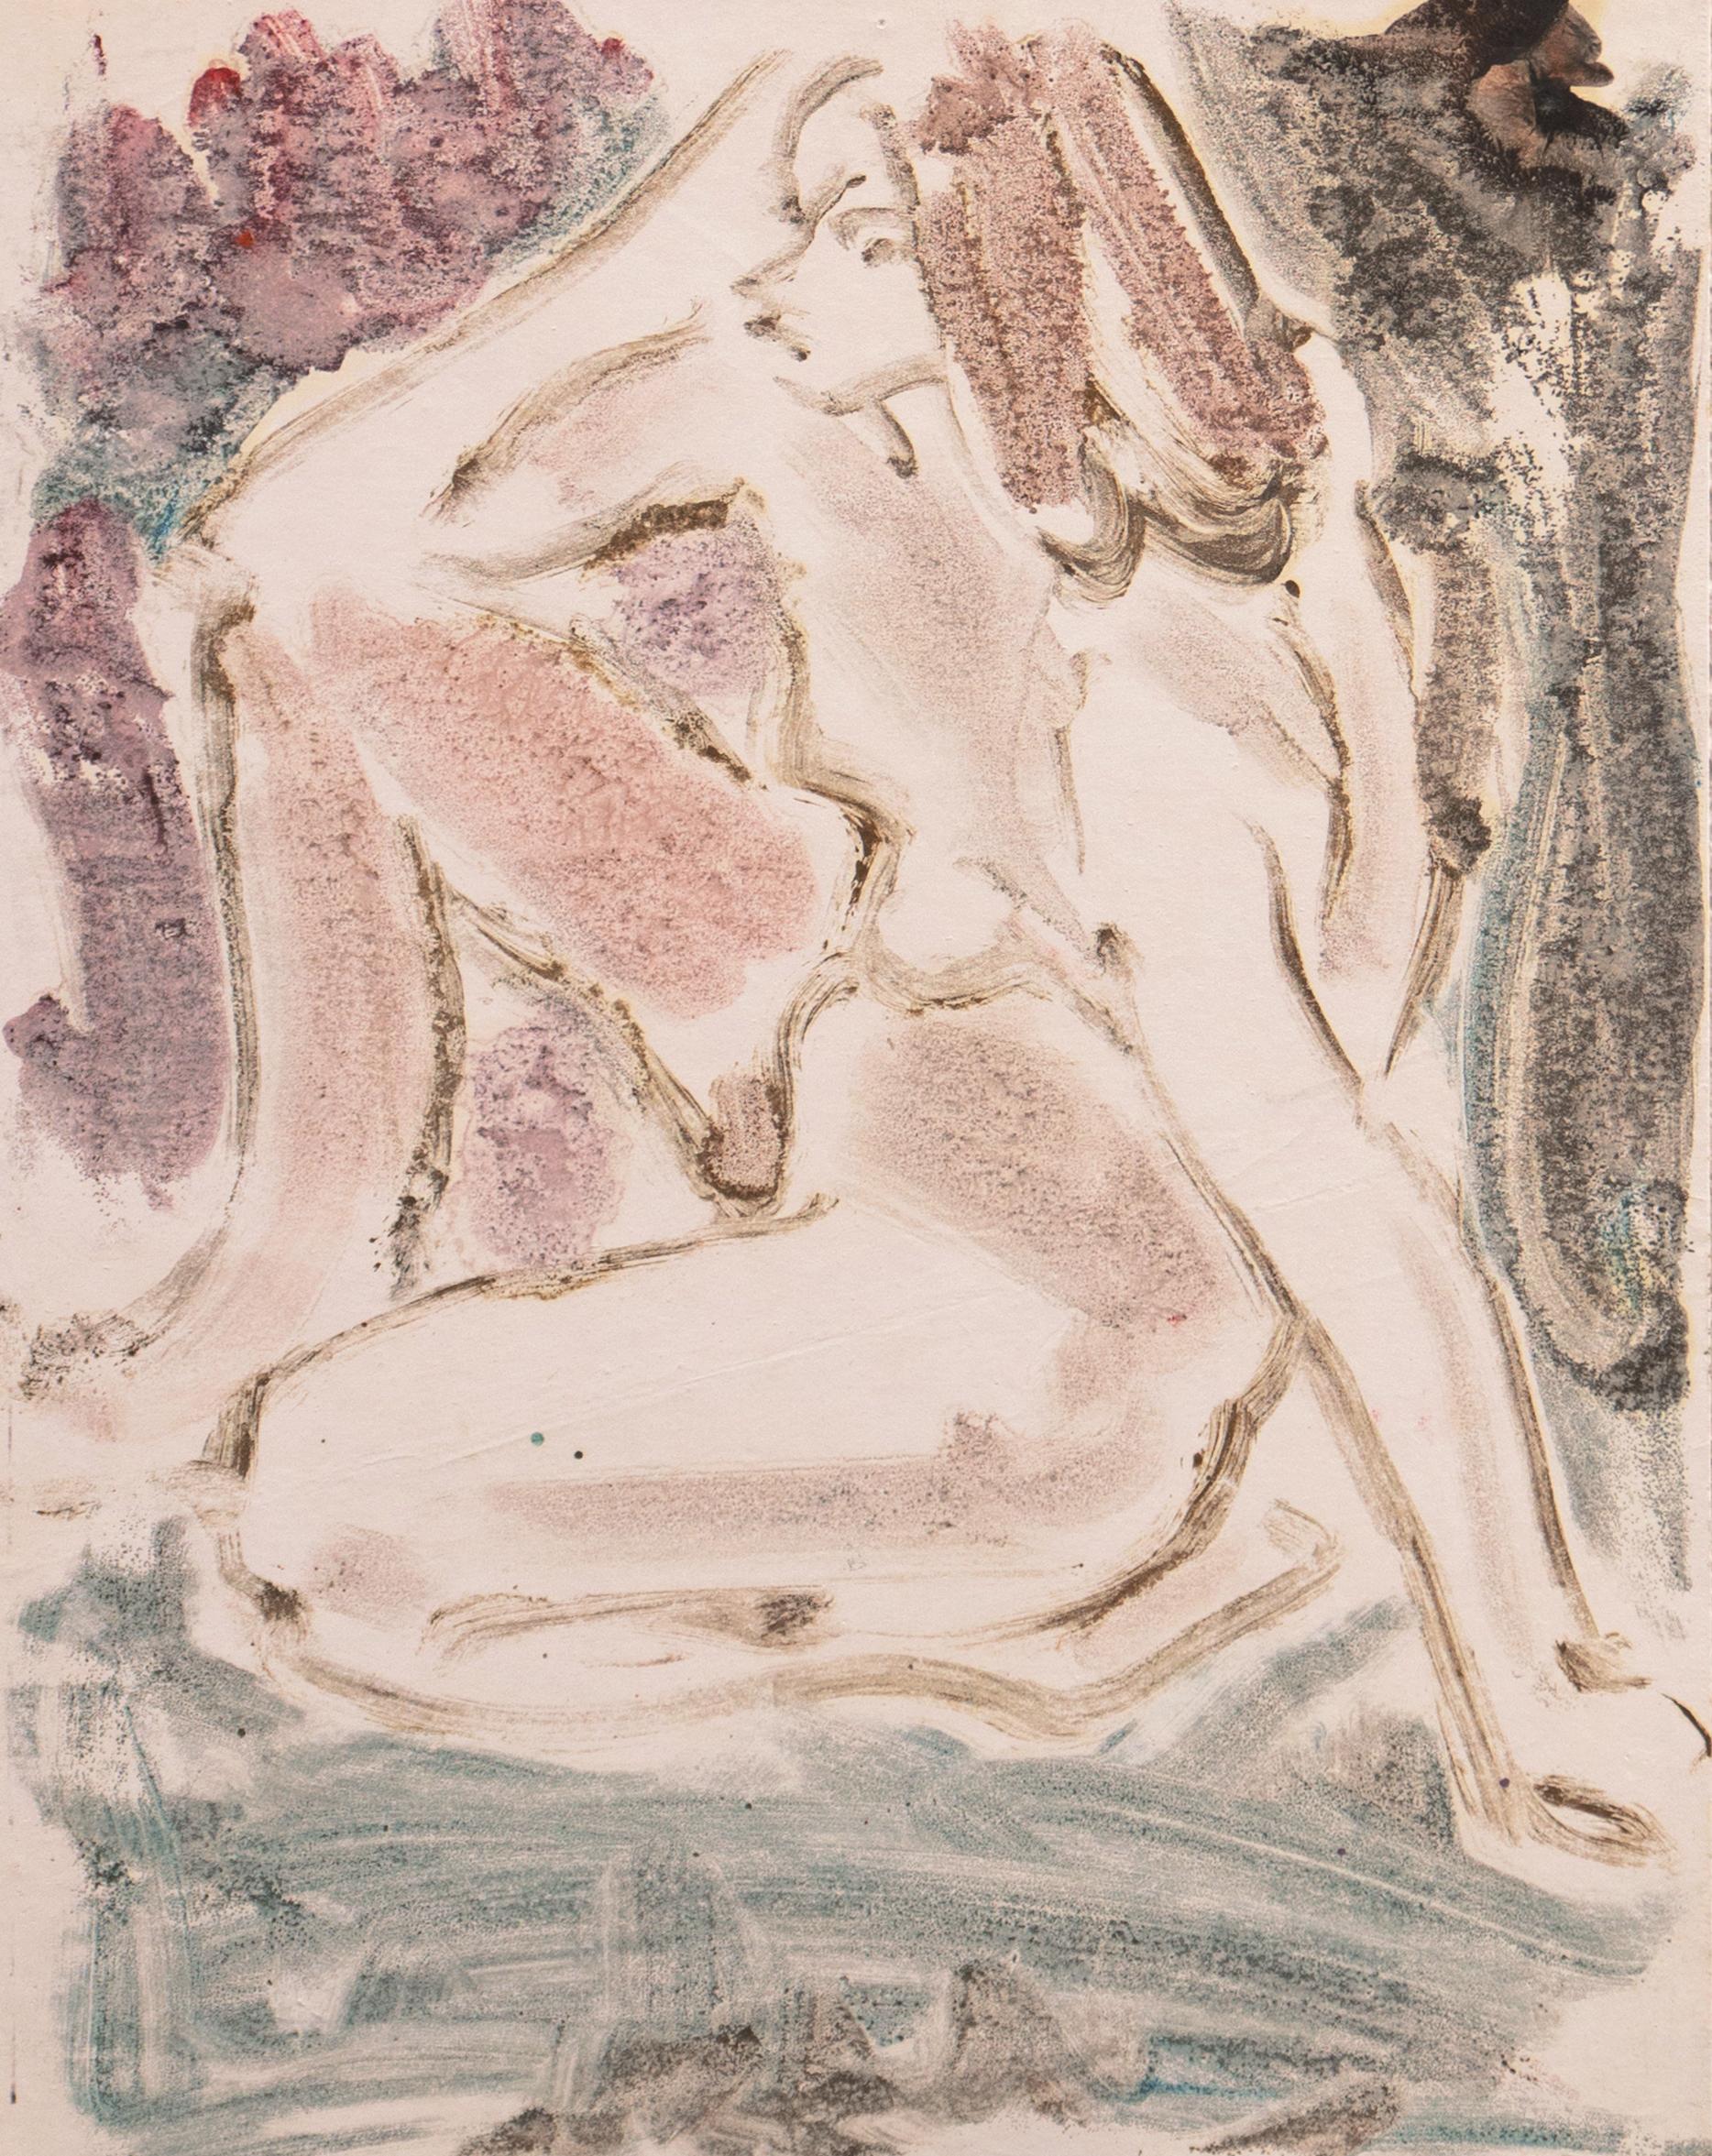 Victor Di Gesu Figurative Print - 'Nude', Paris, Louvre, Salon d'Automne, Académie Chaumière, LACMA, SFAA, Carmel